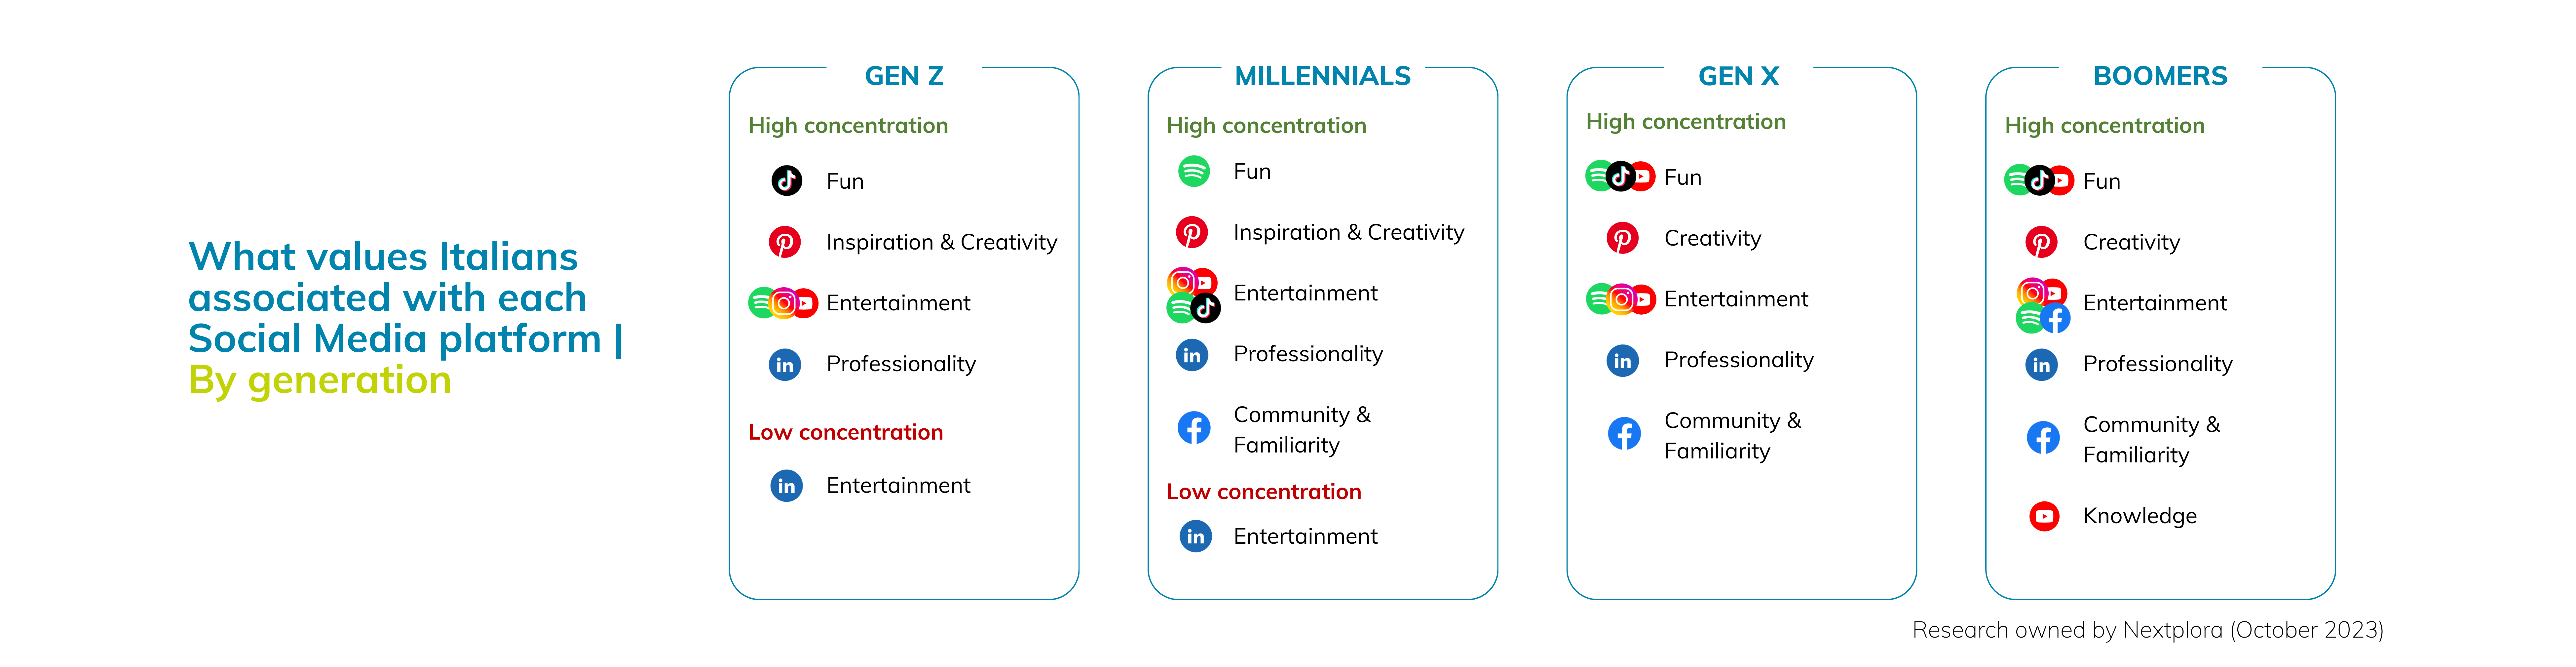 social media values per generation